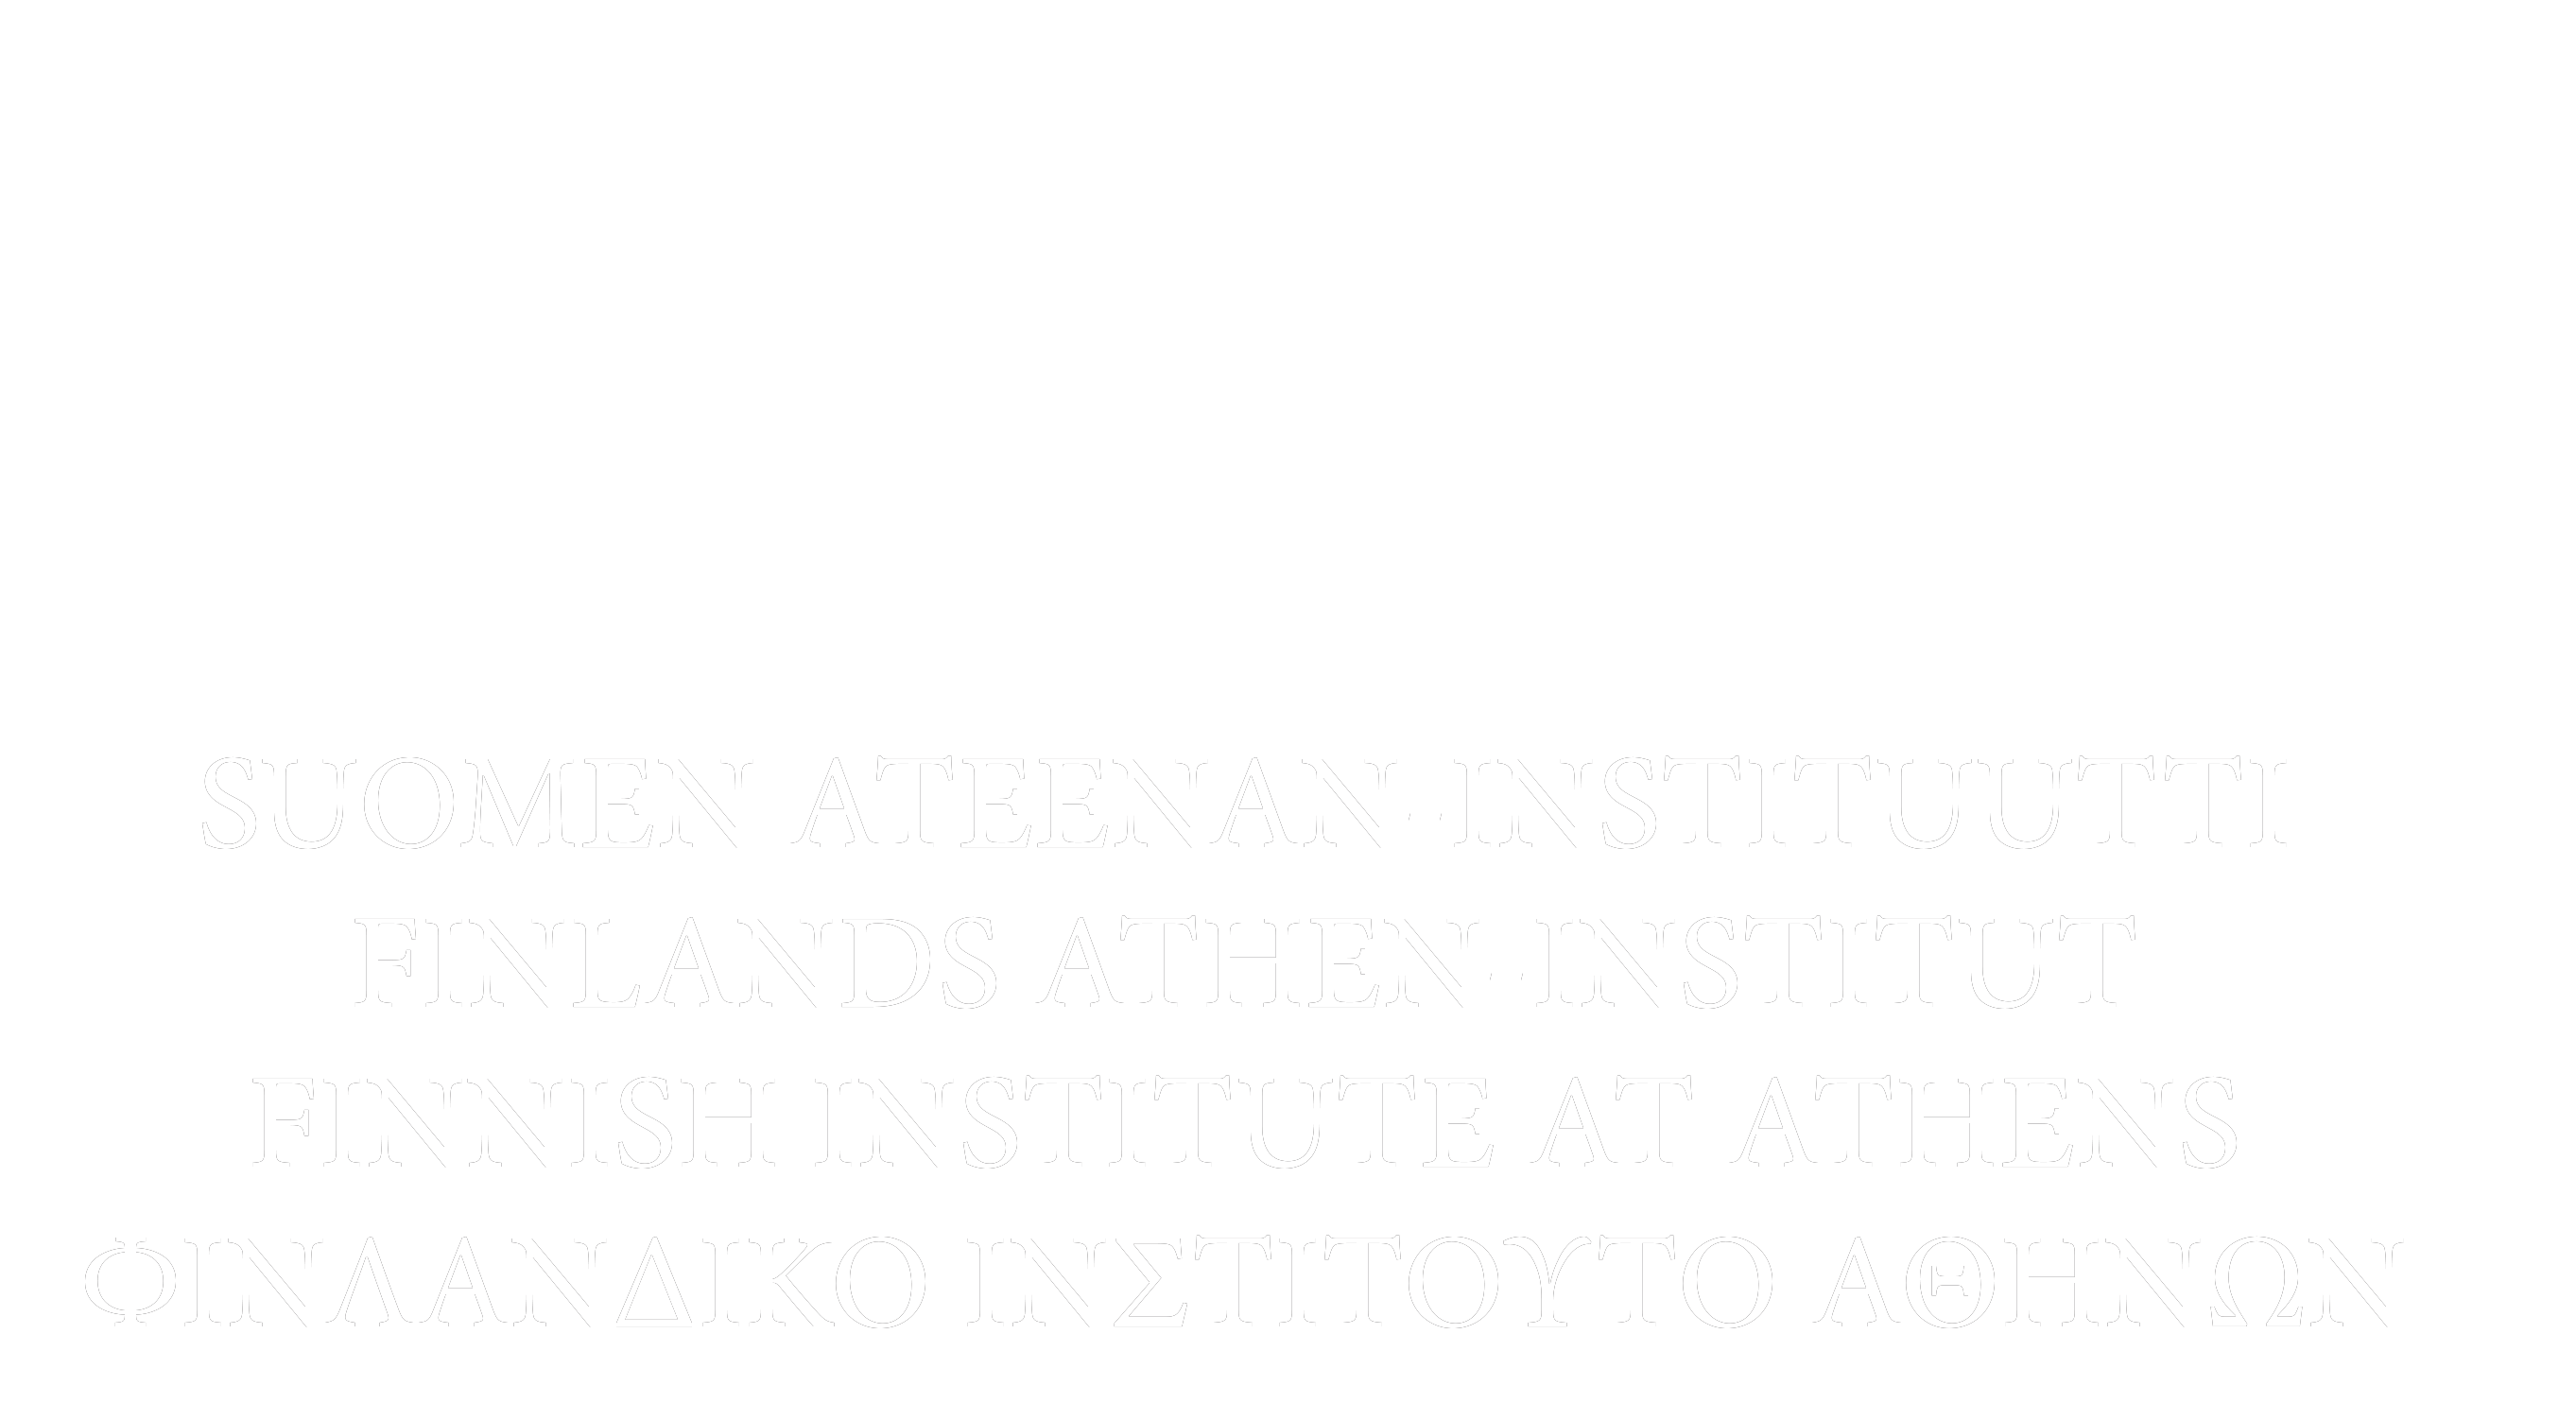 Instituutin logo, jossa valkoisella pohjalla kuusi sinistä pylvästä. Pylväät muodostuvat pysty ja vaaka viivoista. Pylväät lepäävät vaakasuuntaisten sinisten viivojen muodostaman jalusta päällä. Pylväiden alla lukee instituutin nimi suomeksi, ruotsiksi, englanniksi ja kreikaksi. 